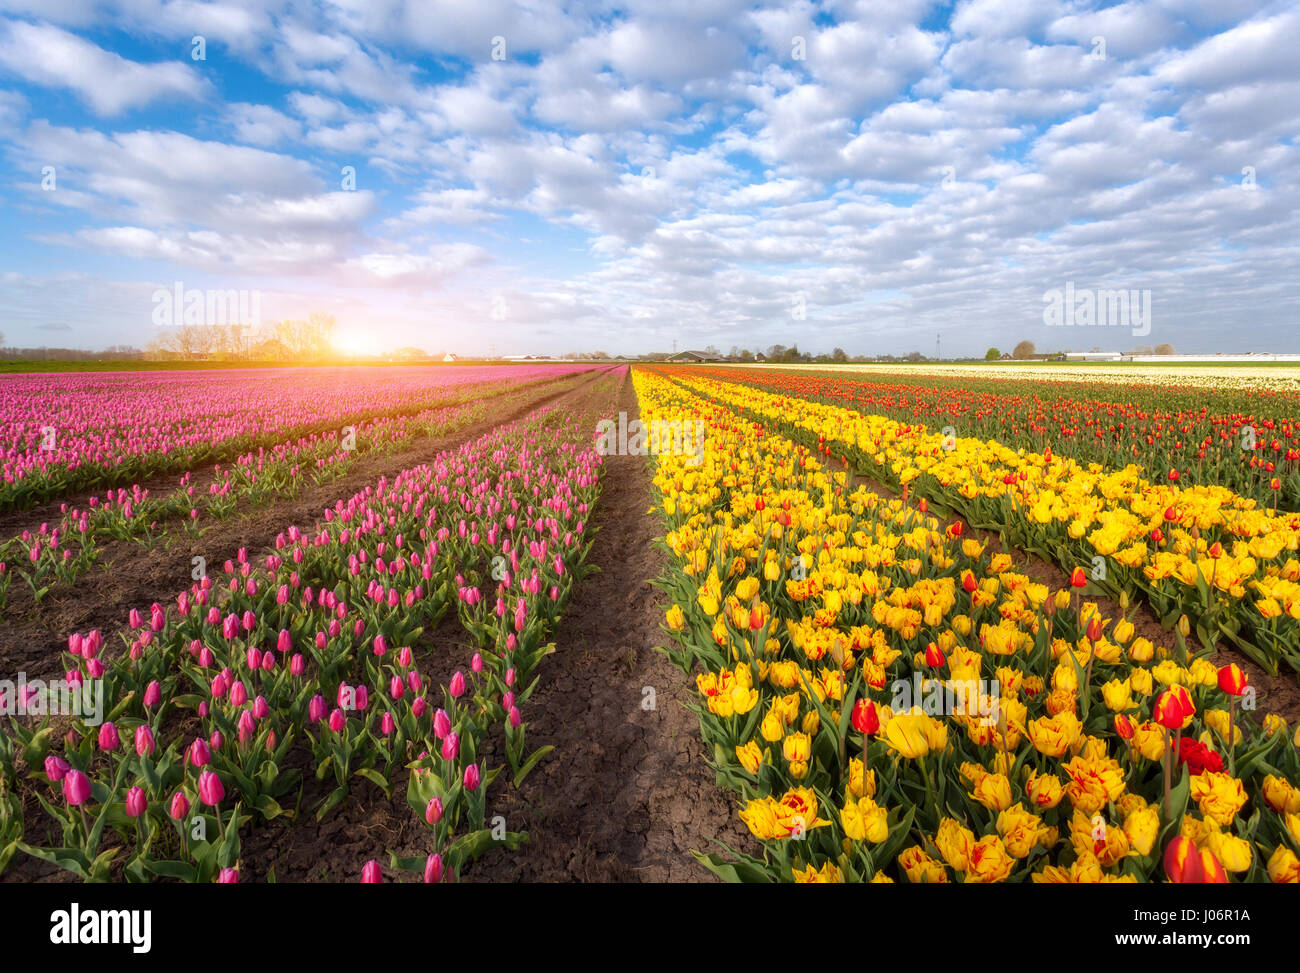 Tulpen. Blumen blühen. Reihen von blühende rote und gelbe Tulpen in einer niederländischen ländlichen Agrarlandschaft. Frühling-Szene auf dem Hof der Tulpe. Bunte Sonne Stockfoto